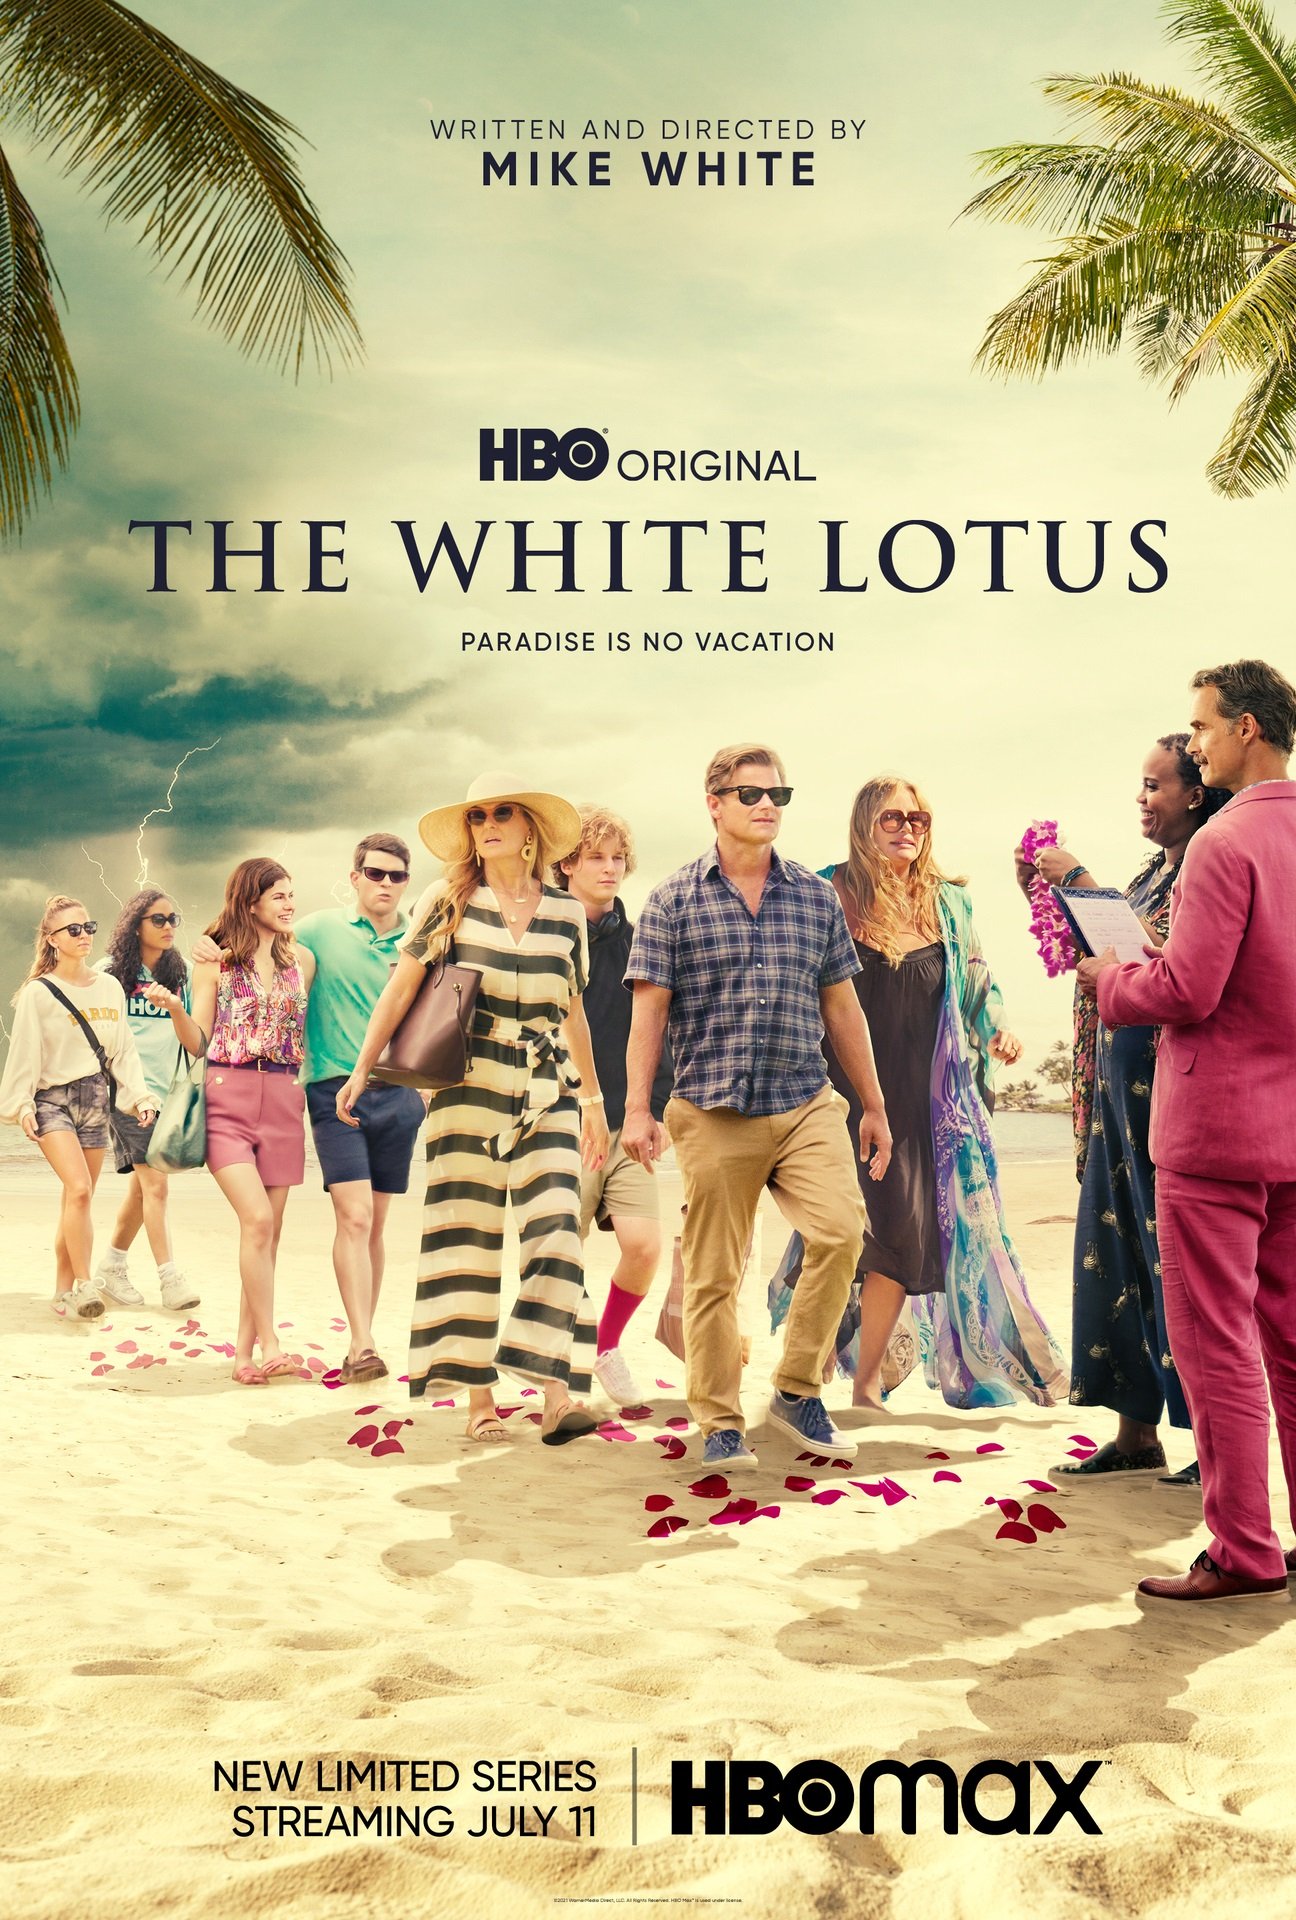 The White Lotus key art poster of the full cast